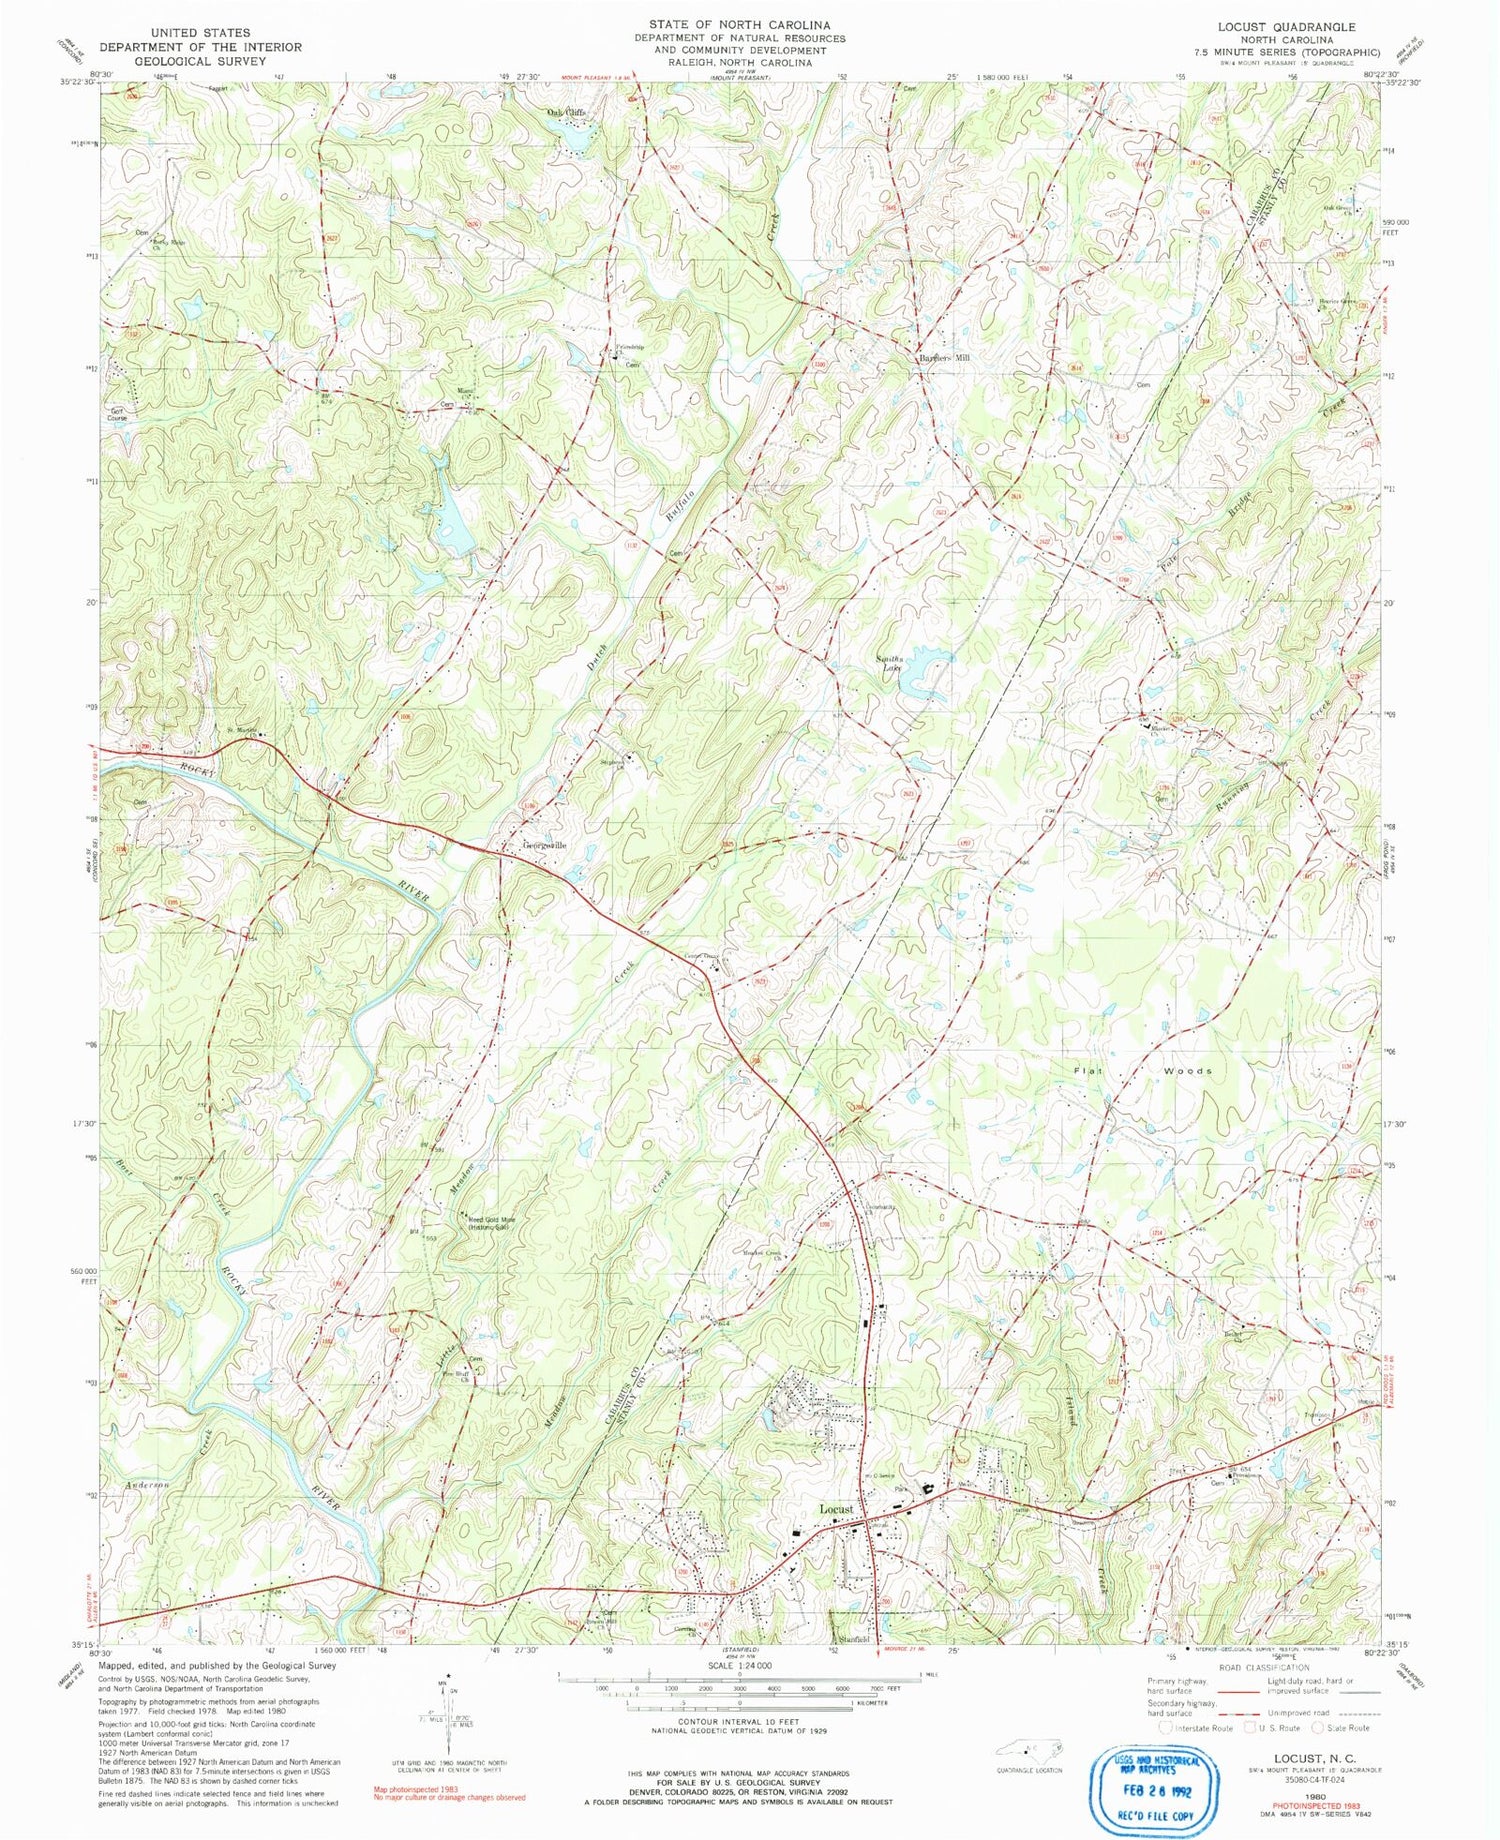 Classic USGS Locust North Carolina 7.5'x7.5' Topo Map Image